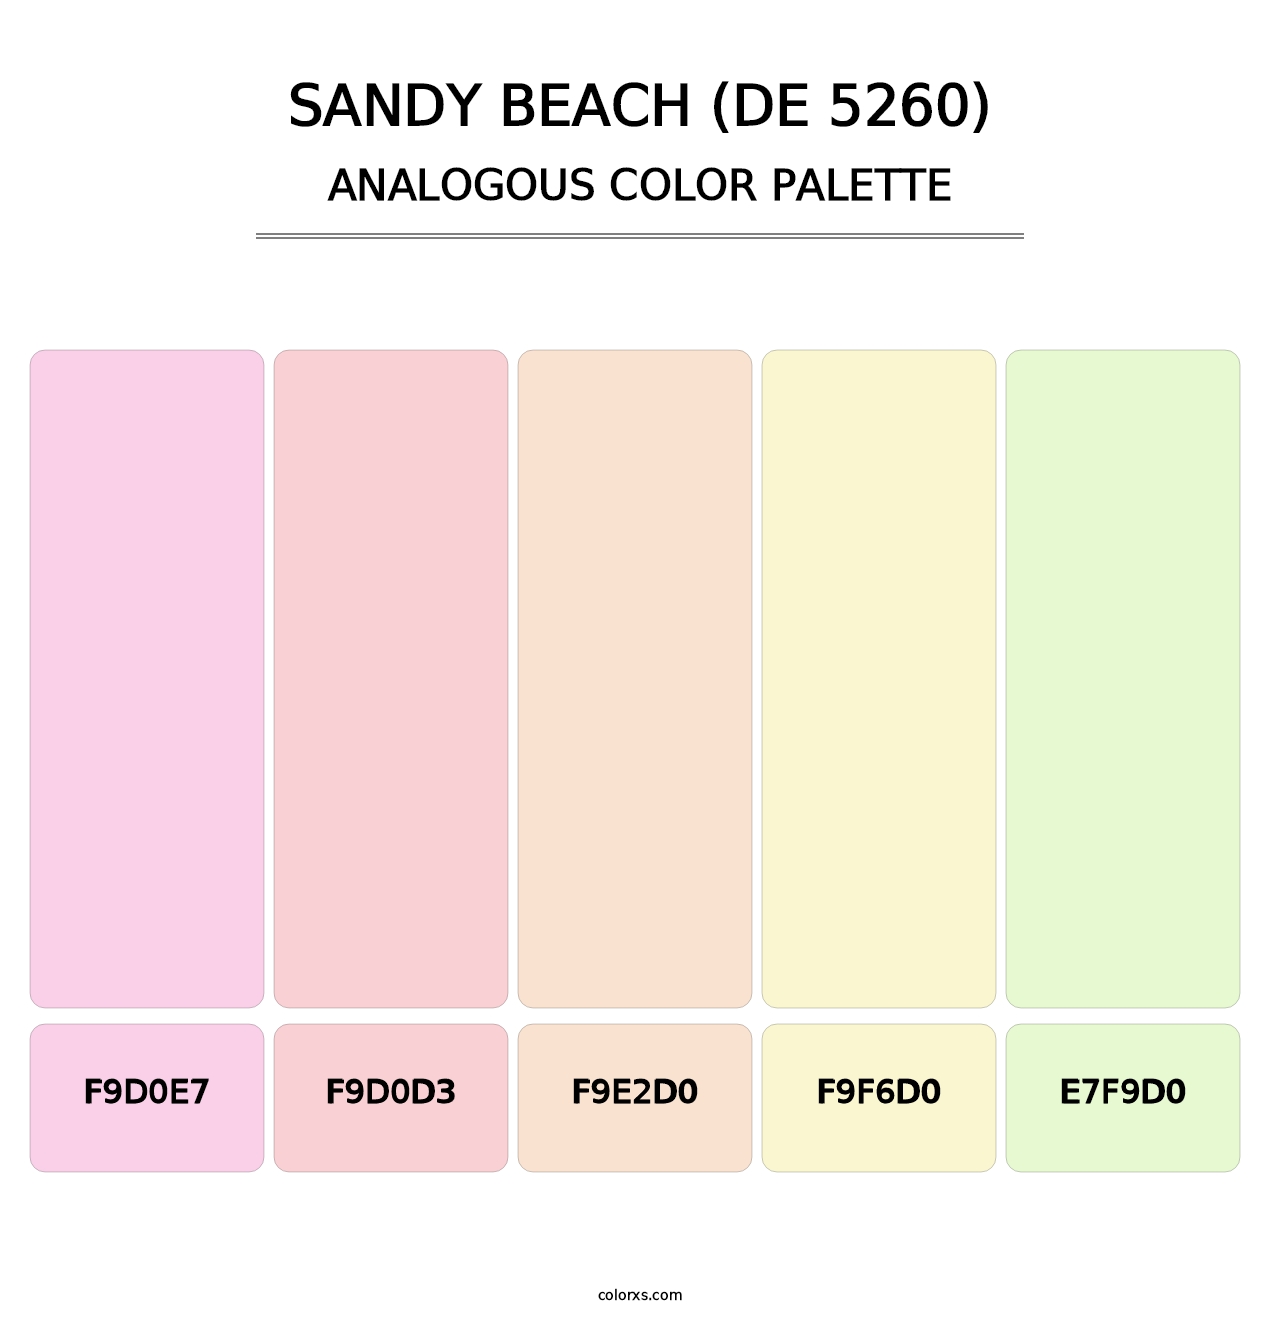 Sandy Beach (DE 5260) - Analogous Color Palette